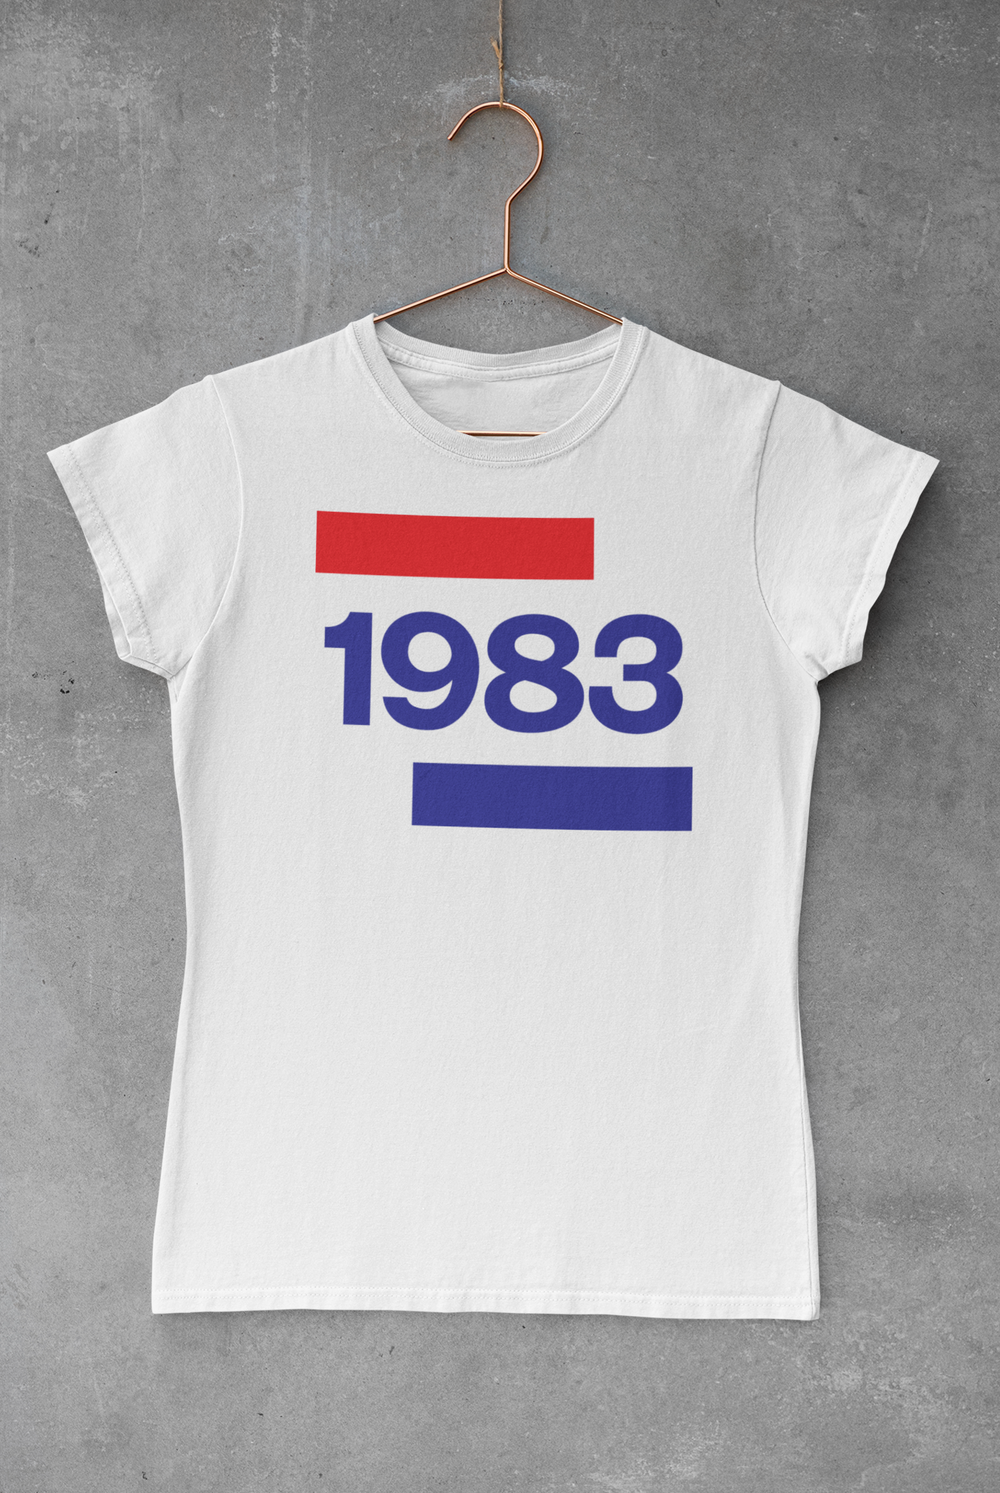 1983 Going Dutch Women's Softstyle Tee - TalkPeng